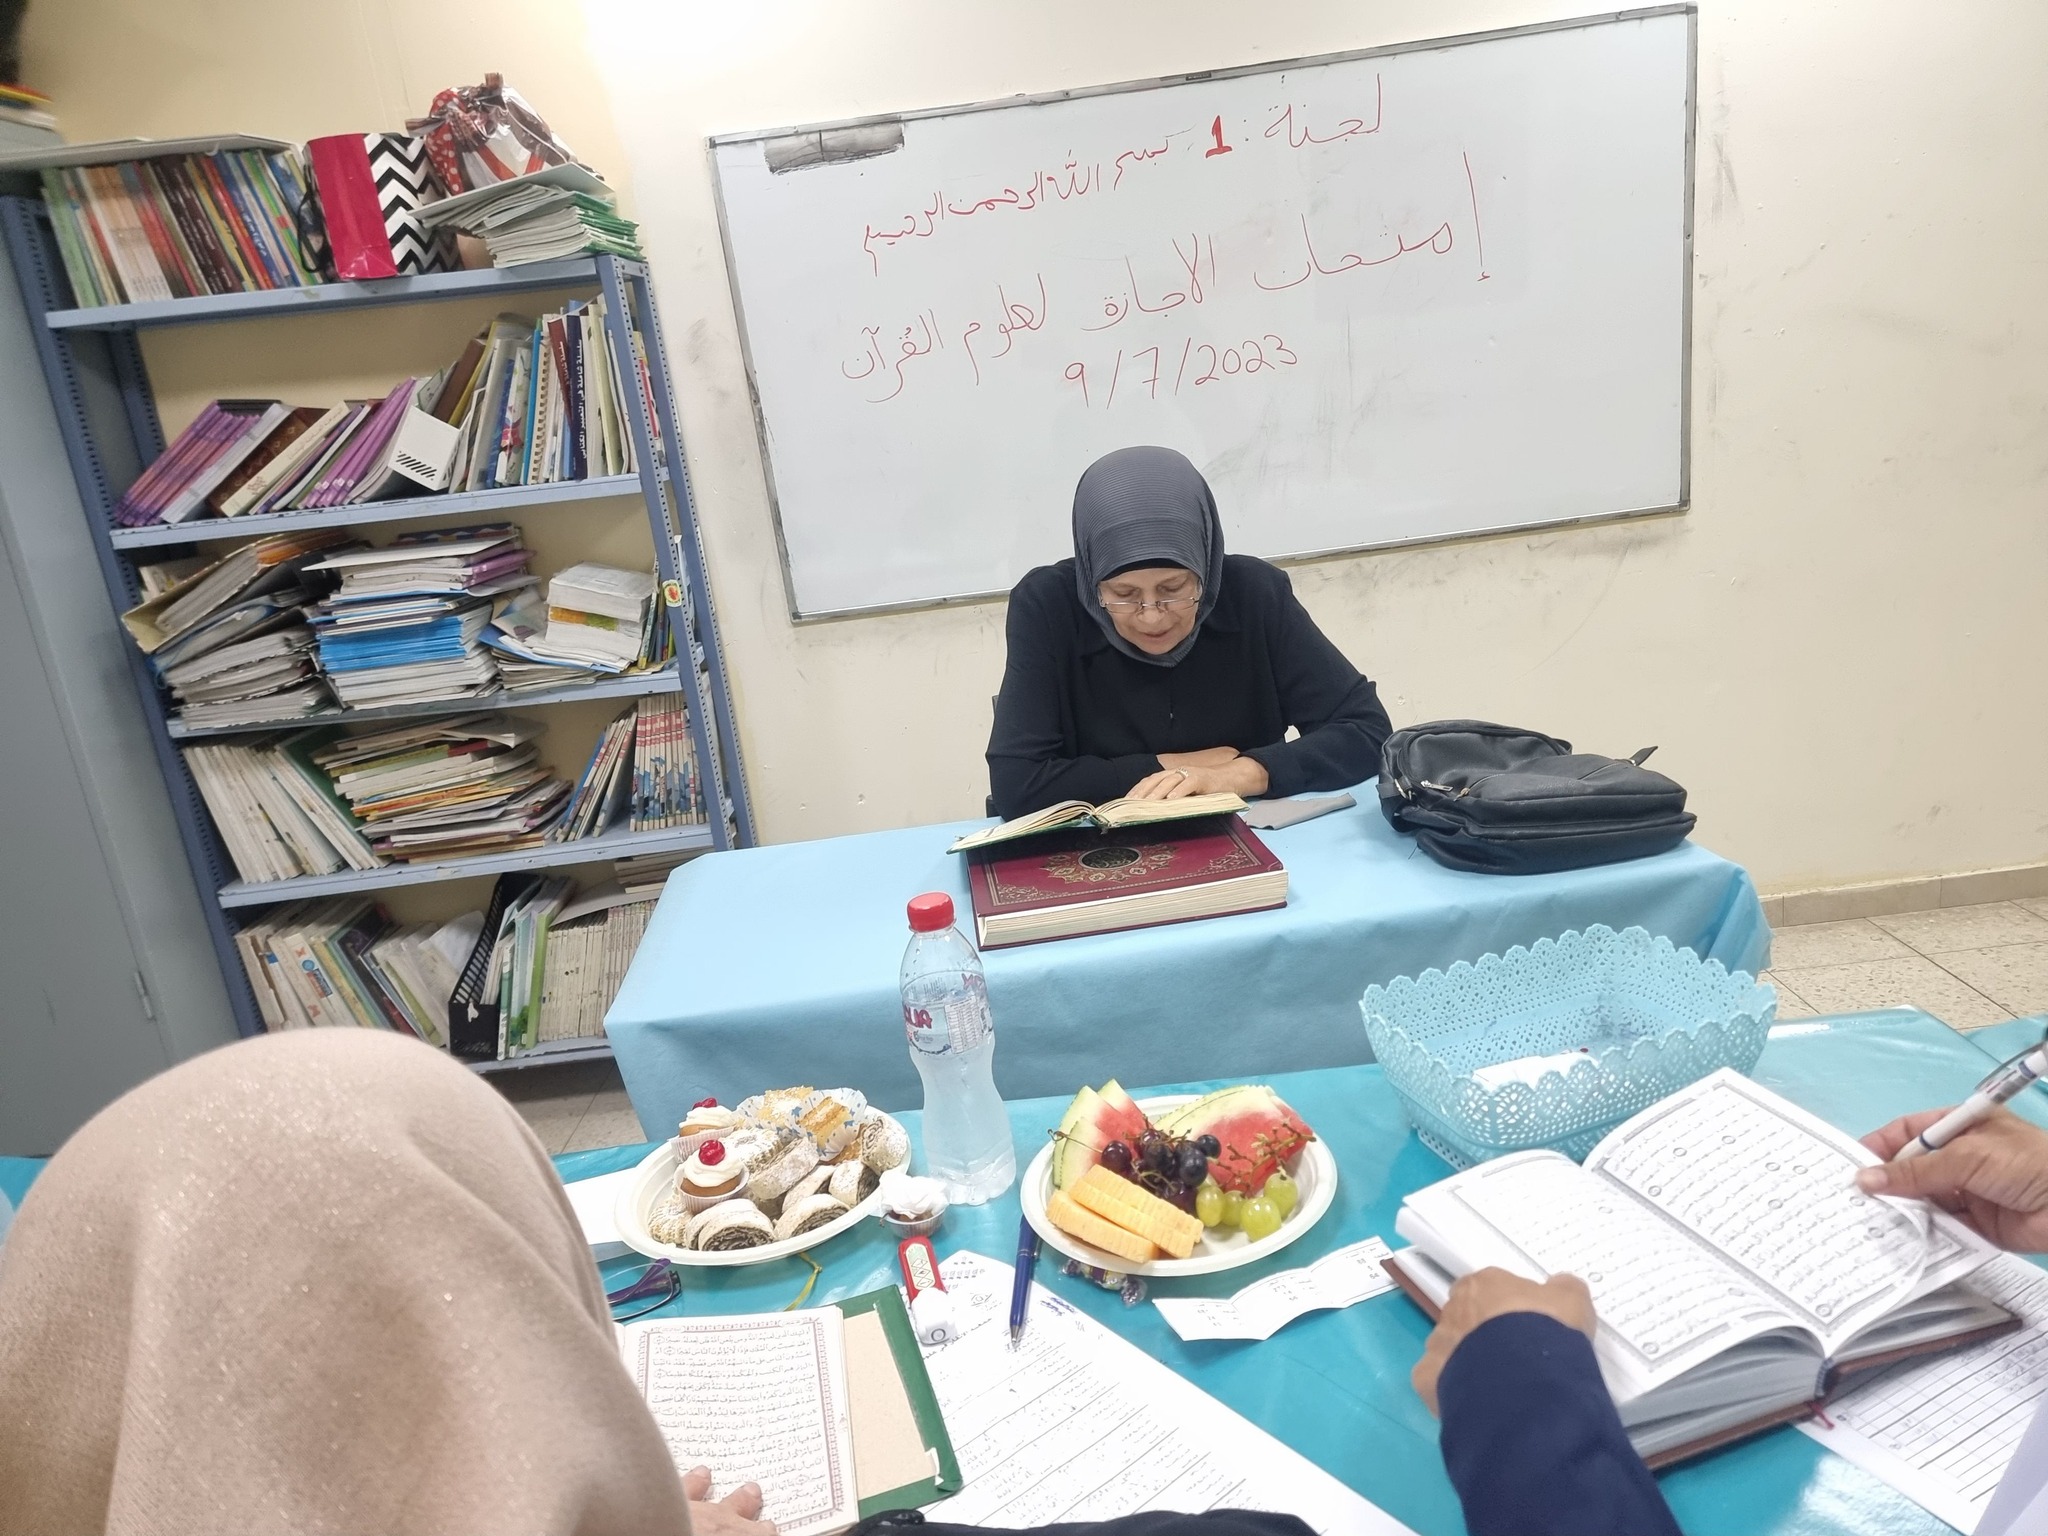  مجموعة من طلاب وطالبات يافا، اللد والرملة يتقدمون لامتحان التلاوة العملي